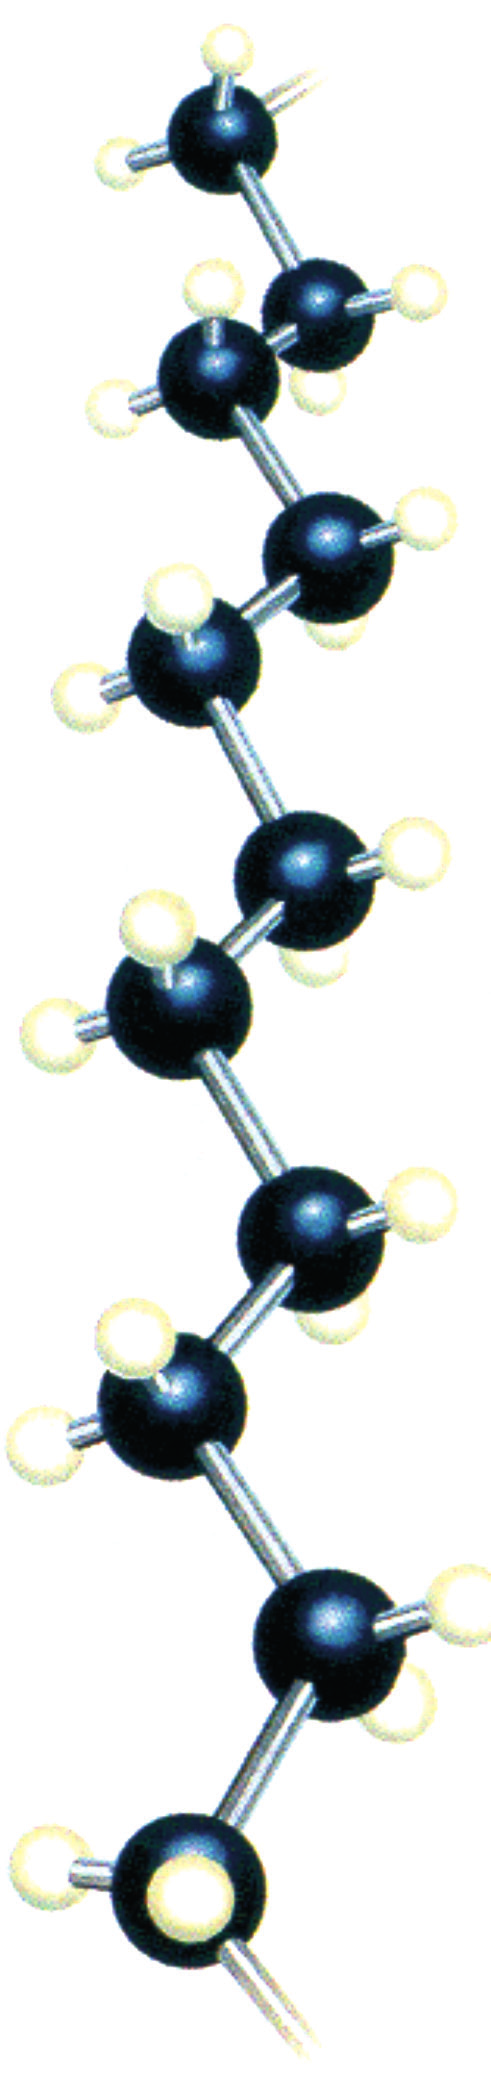 Το κύριο προϊόν της παραπάνω αντίδρασης μεταξύ του προπενίου και υδροχλωρίου προβλέπεται ως εξής: Σύμφωνα με τον κανόνα του Markovnikov, στις αντιδράσεις προσθήκης μορίων της μορφής ΗΑ σε αλκένια, το